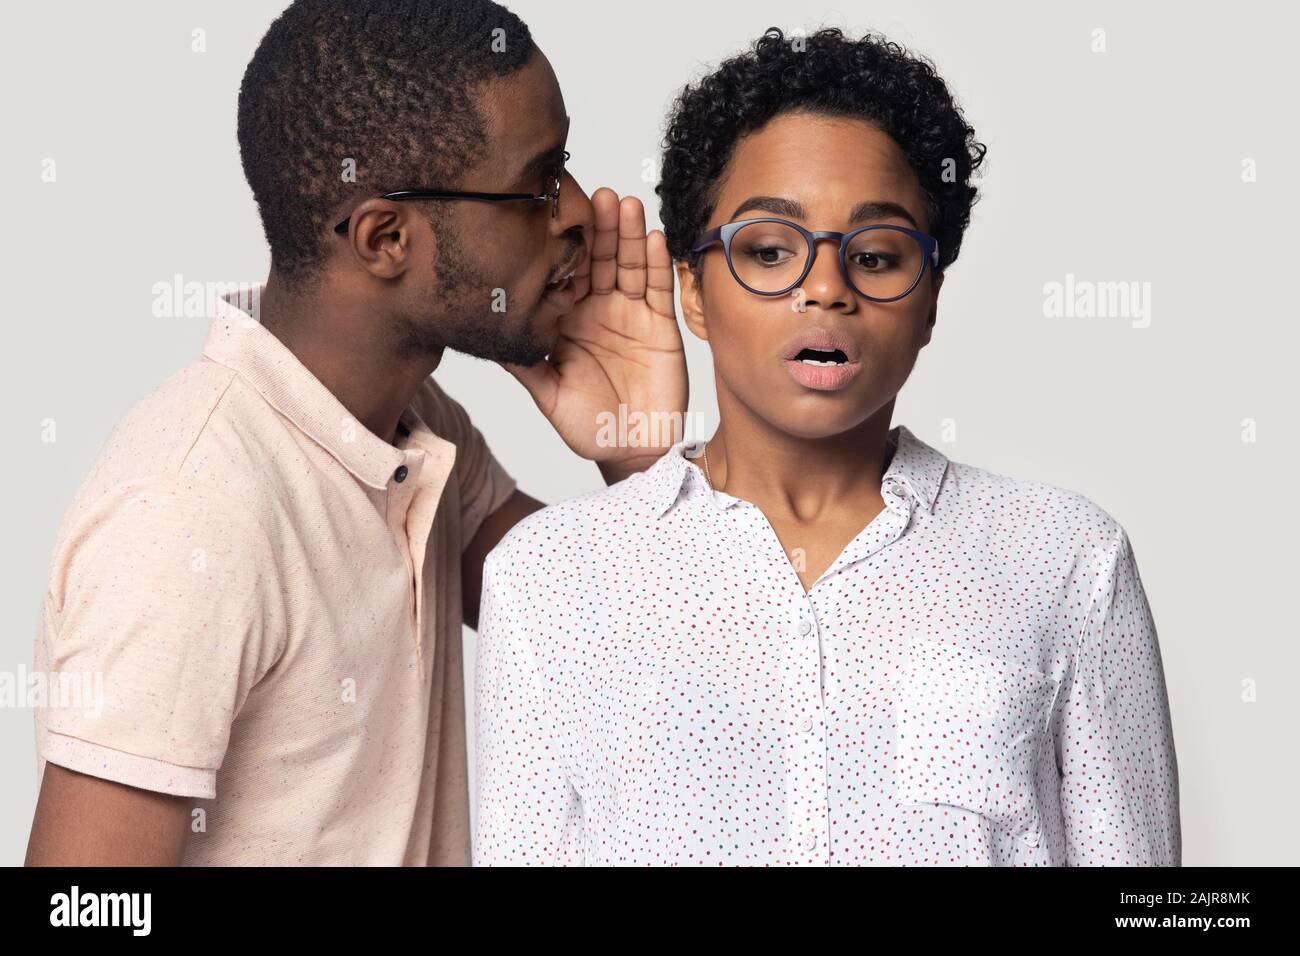 African guy whispering to ear of girl secret, studio shot Stock Photo